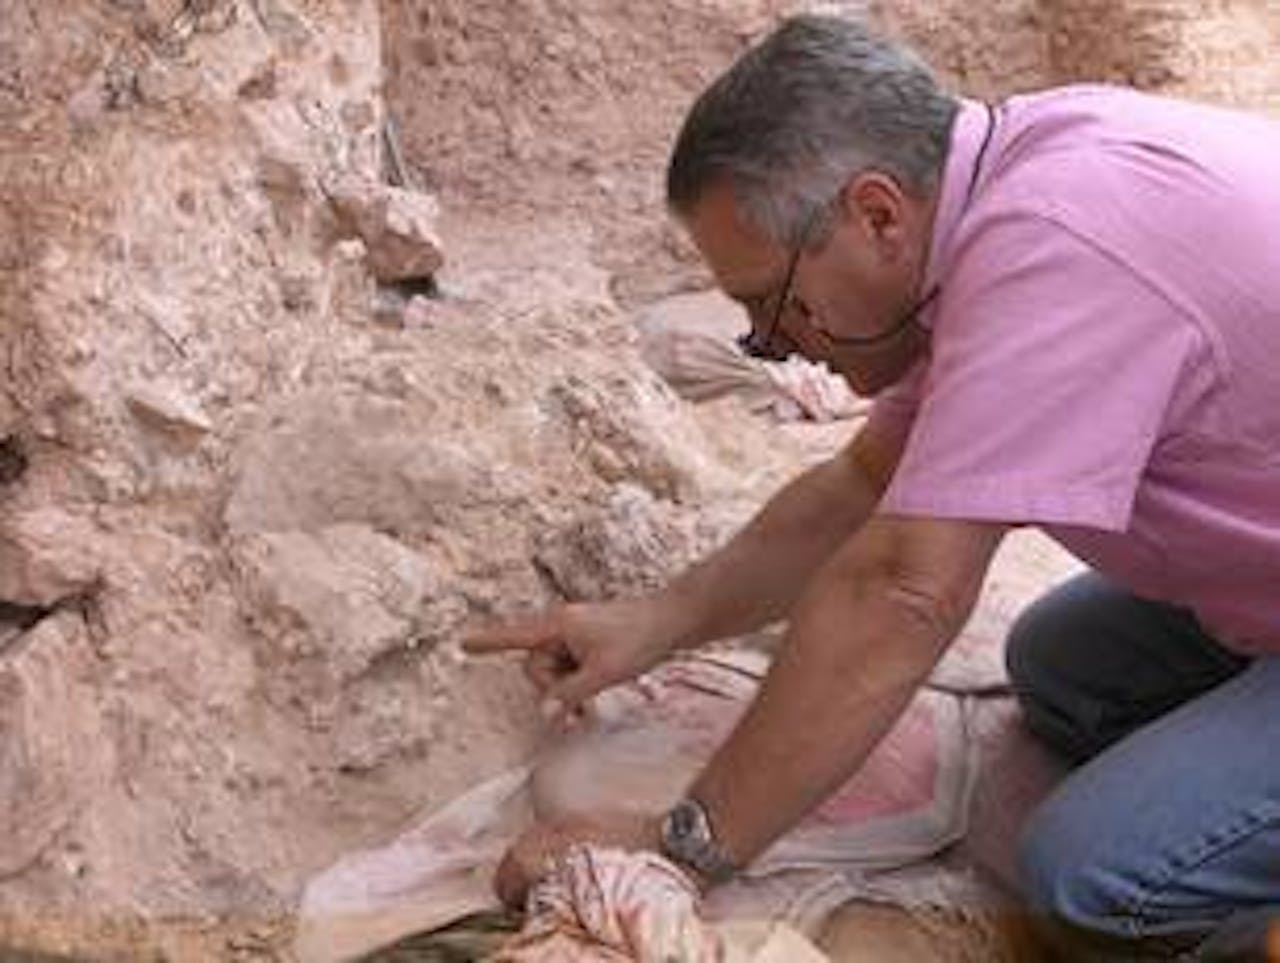 Jean-Jacques Hublin op de archeologische opgravingslocatie Jebel Irhoud (Marokko). Hij wijst naar het fossiel van een schedel, waarvan de oogkassen zichtbaar zijn.